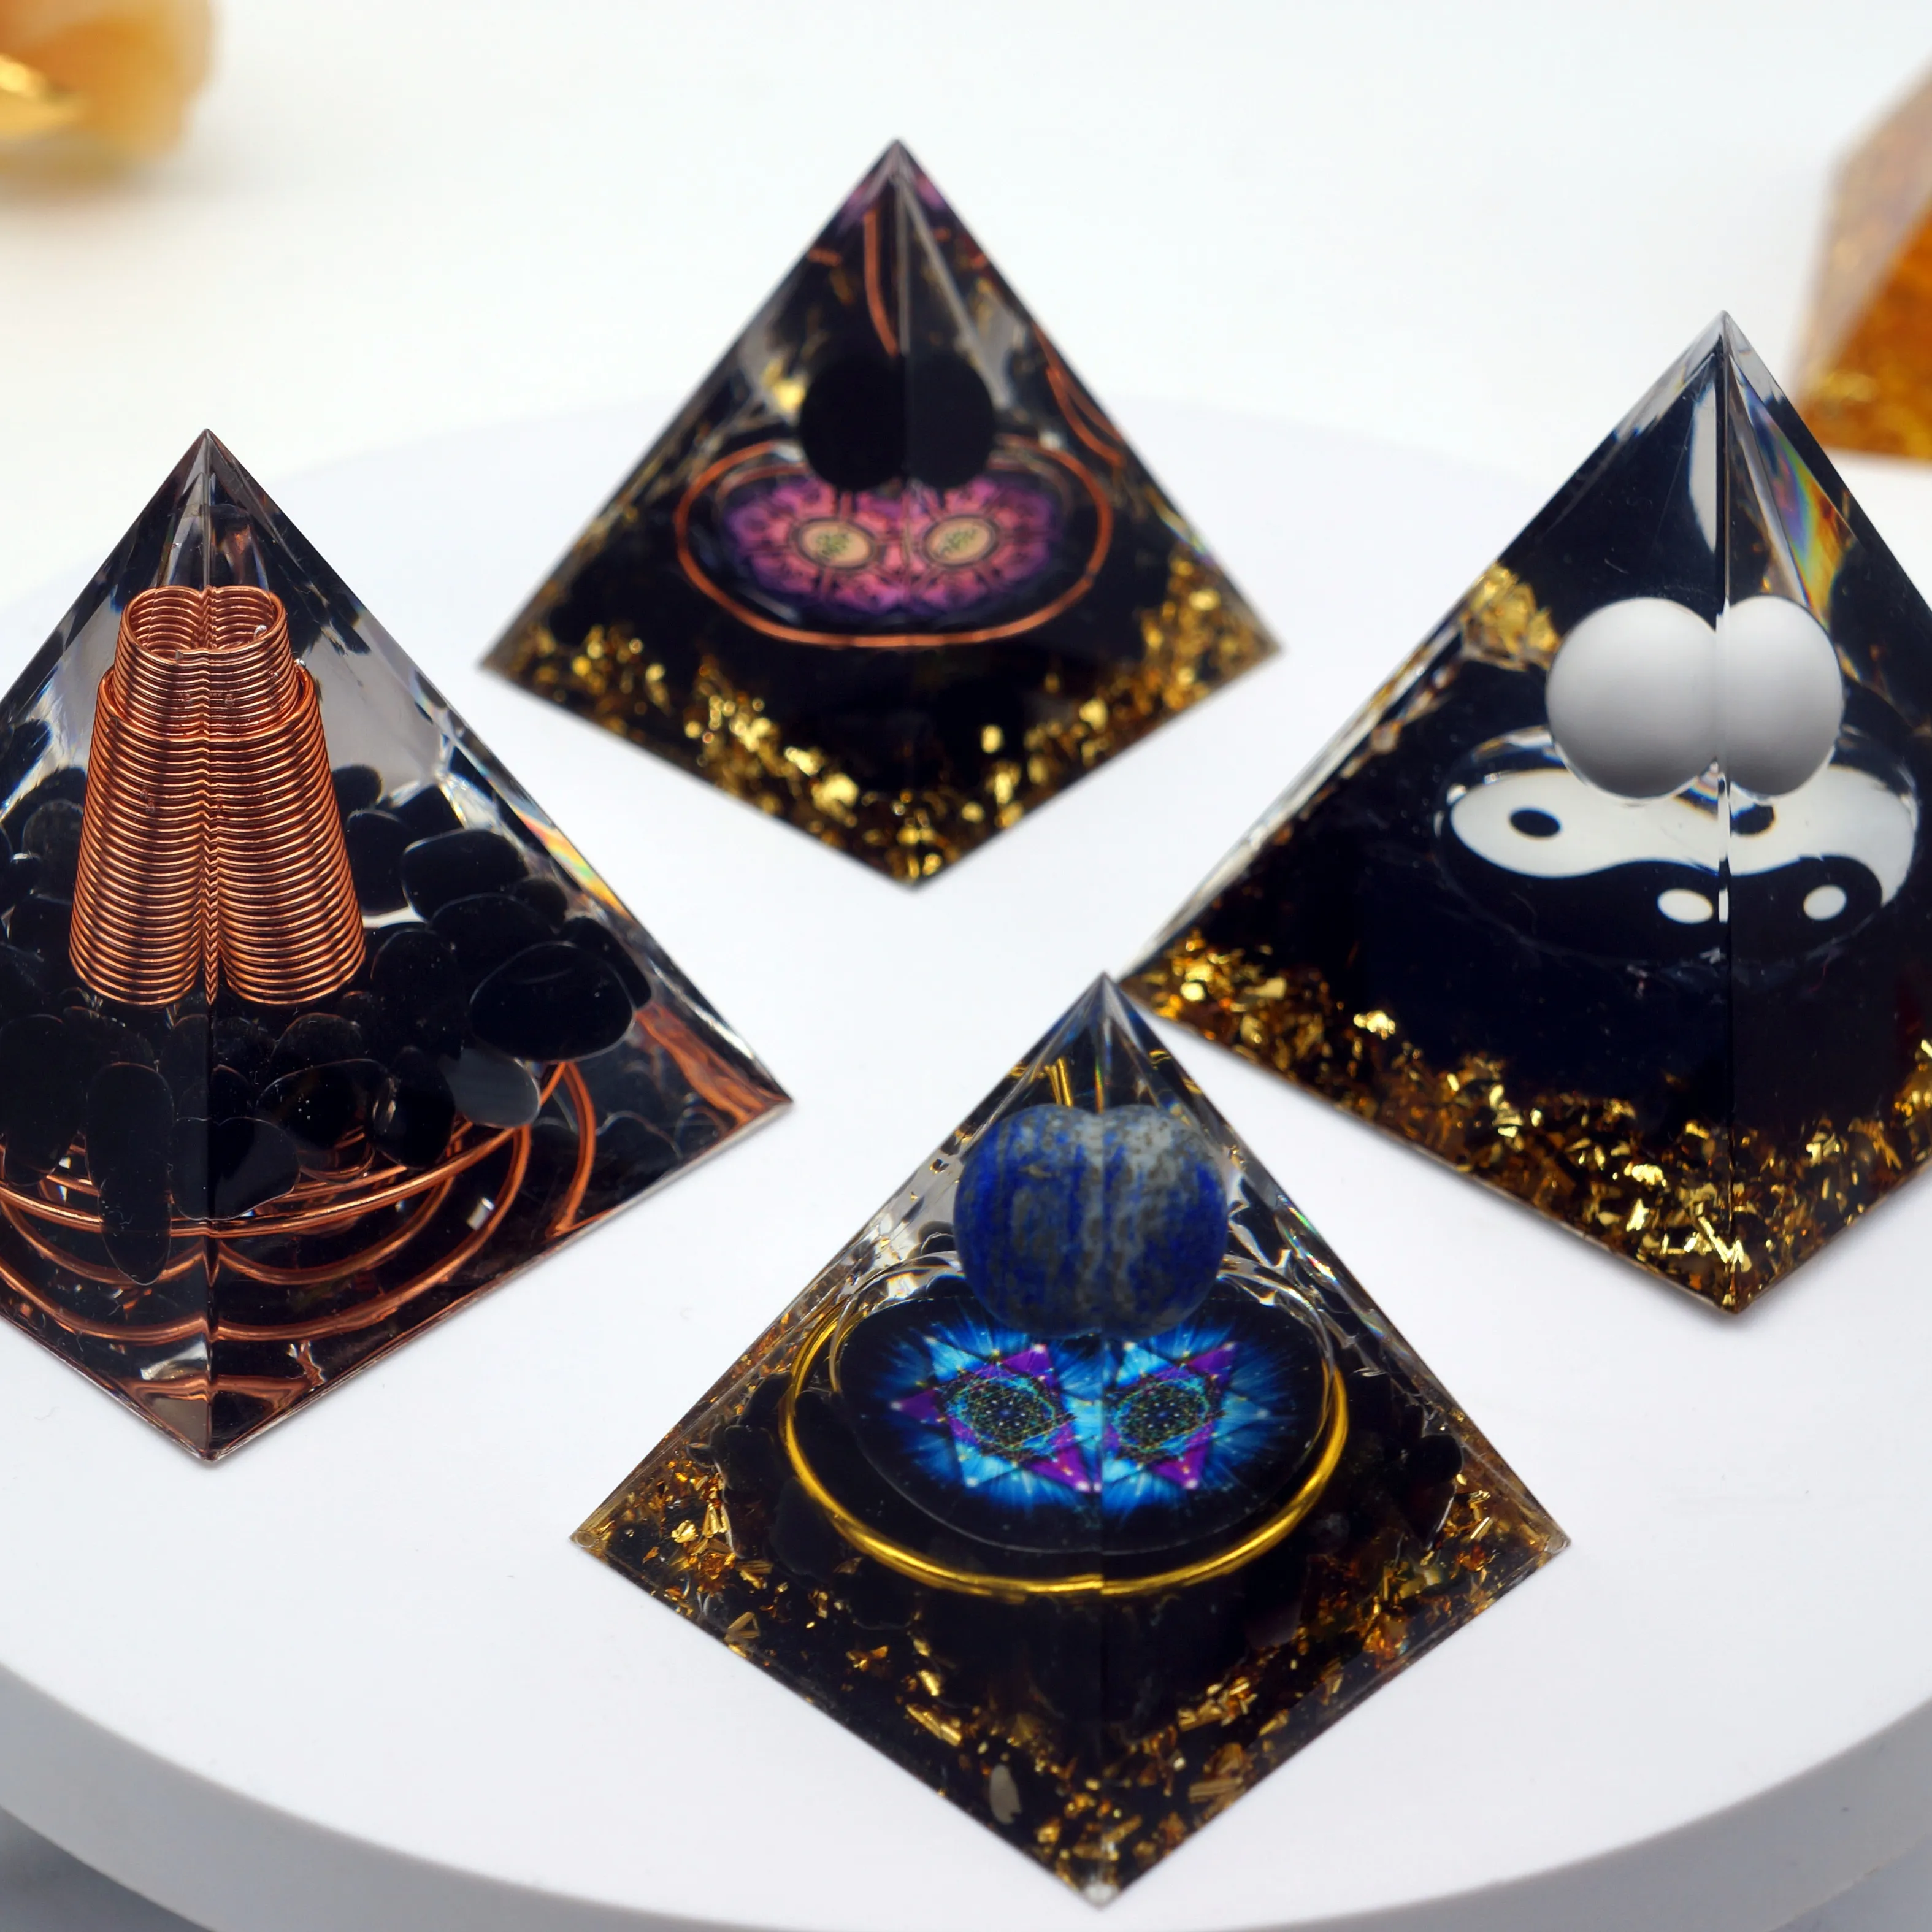 Pirámide de organita espiritual natural de 5cm y 6cm, productos curativos, pirámide de cristal de orgonita para fengshui